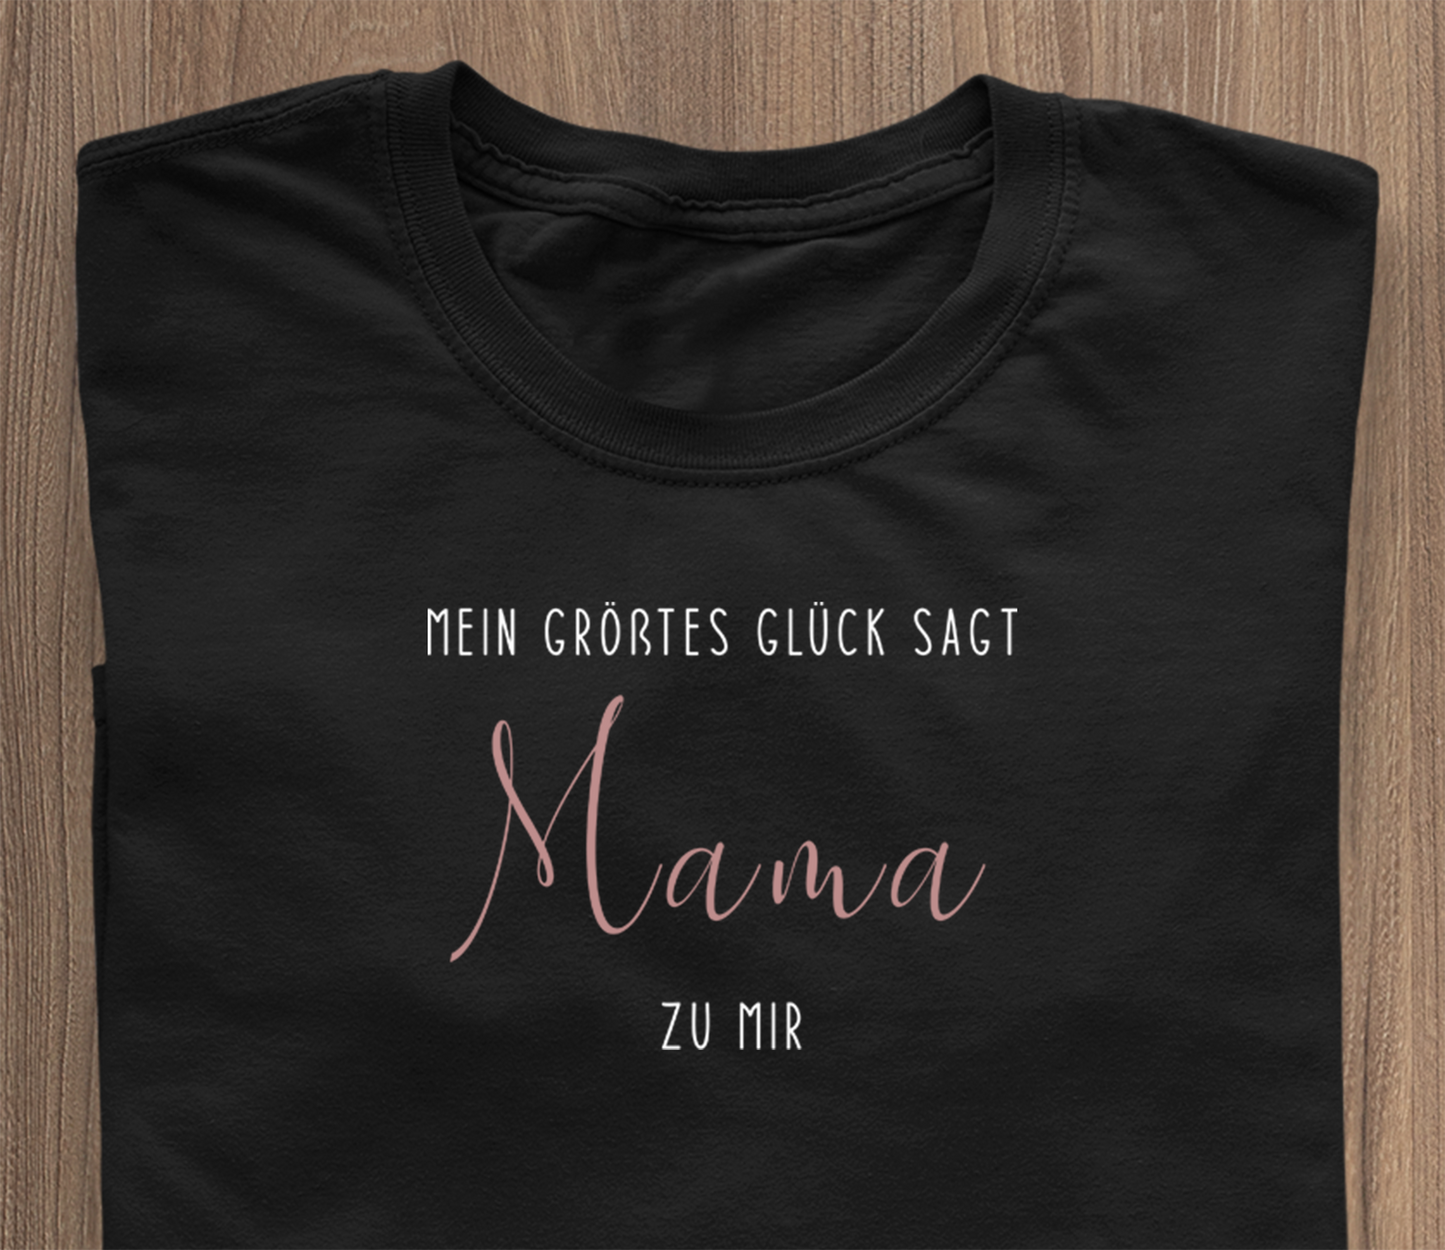 Mäi gréisste Gléck seet mir MAMA (nei Editioun) - T-Shirt schwaarz